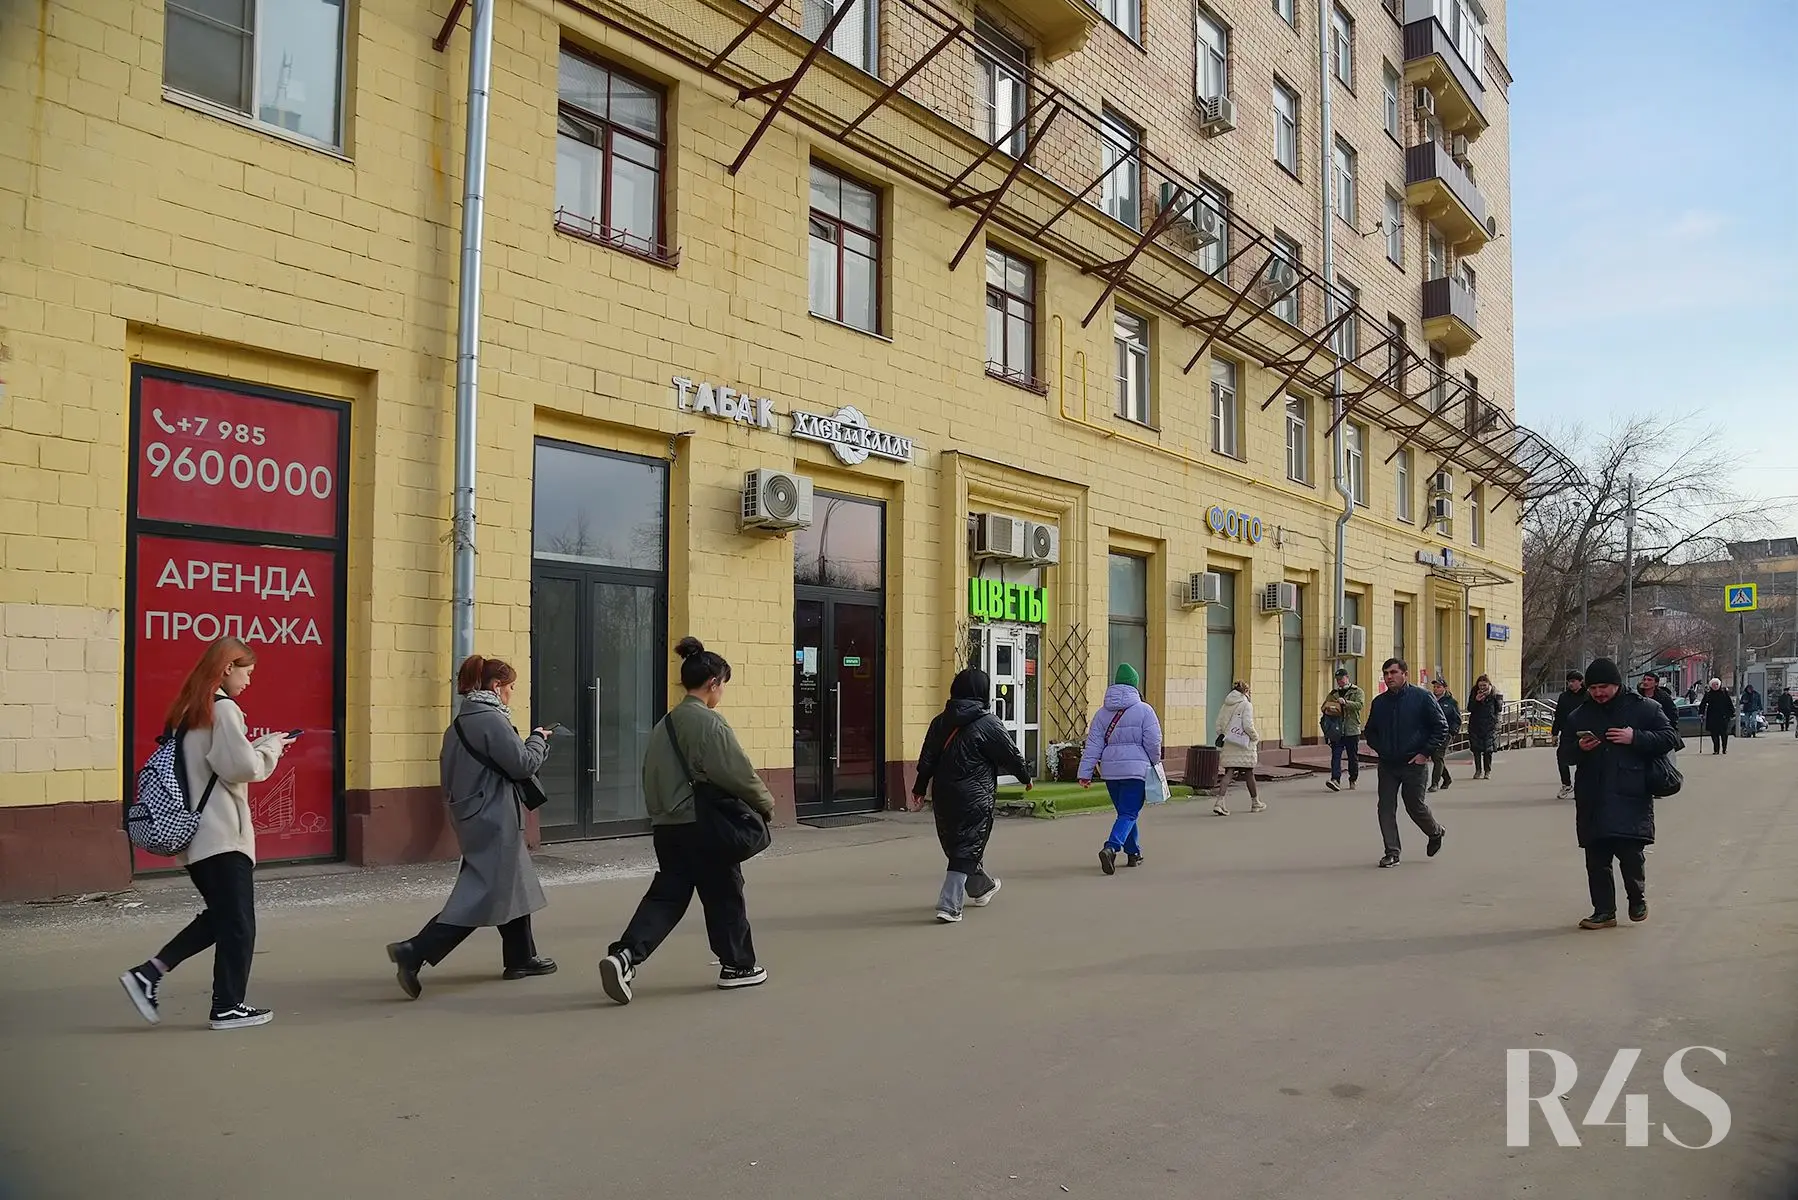 Аренда торговых помещений площадью 180 - 205.2 м2 в Москве:  Щербаковская, 35 R4S | Realty4Sale